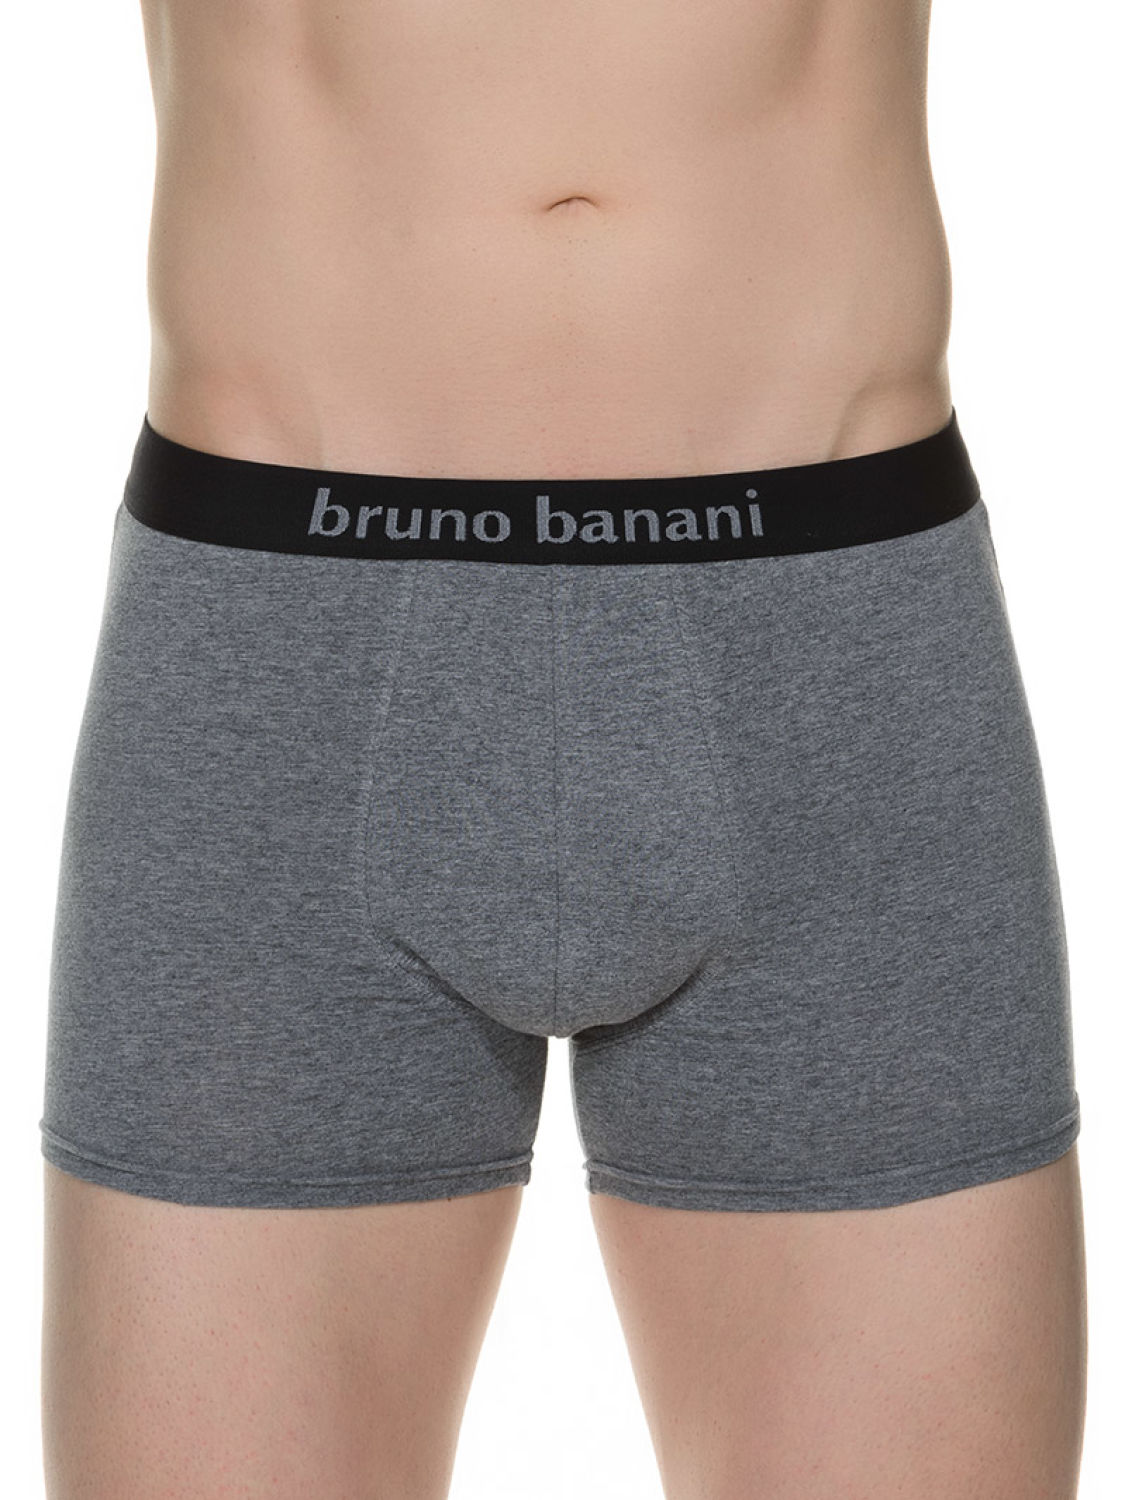 Bruno Banani Flowing 2Pack Short schwarz / grau